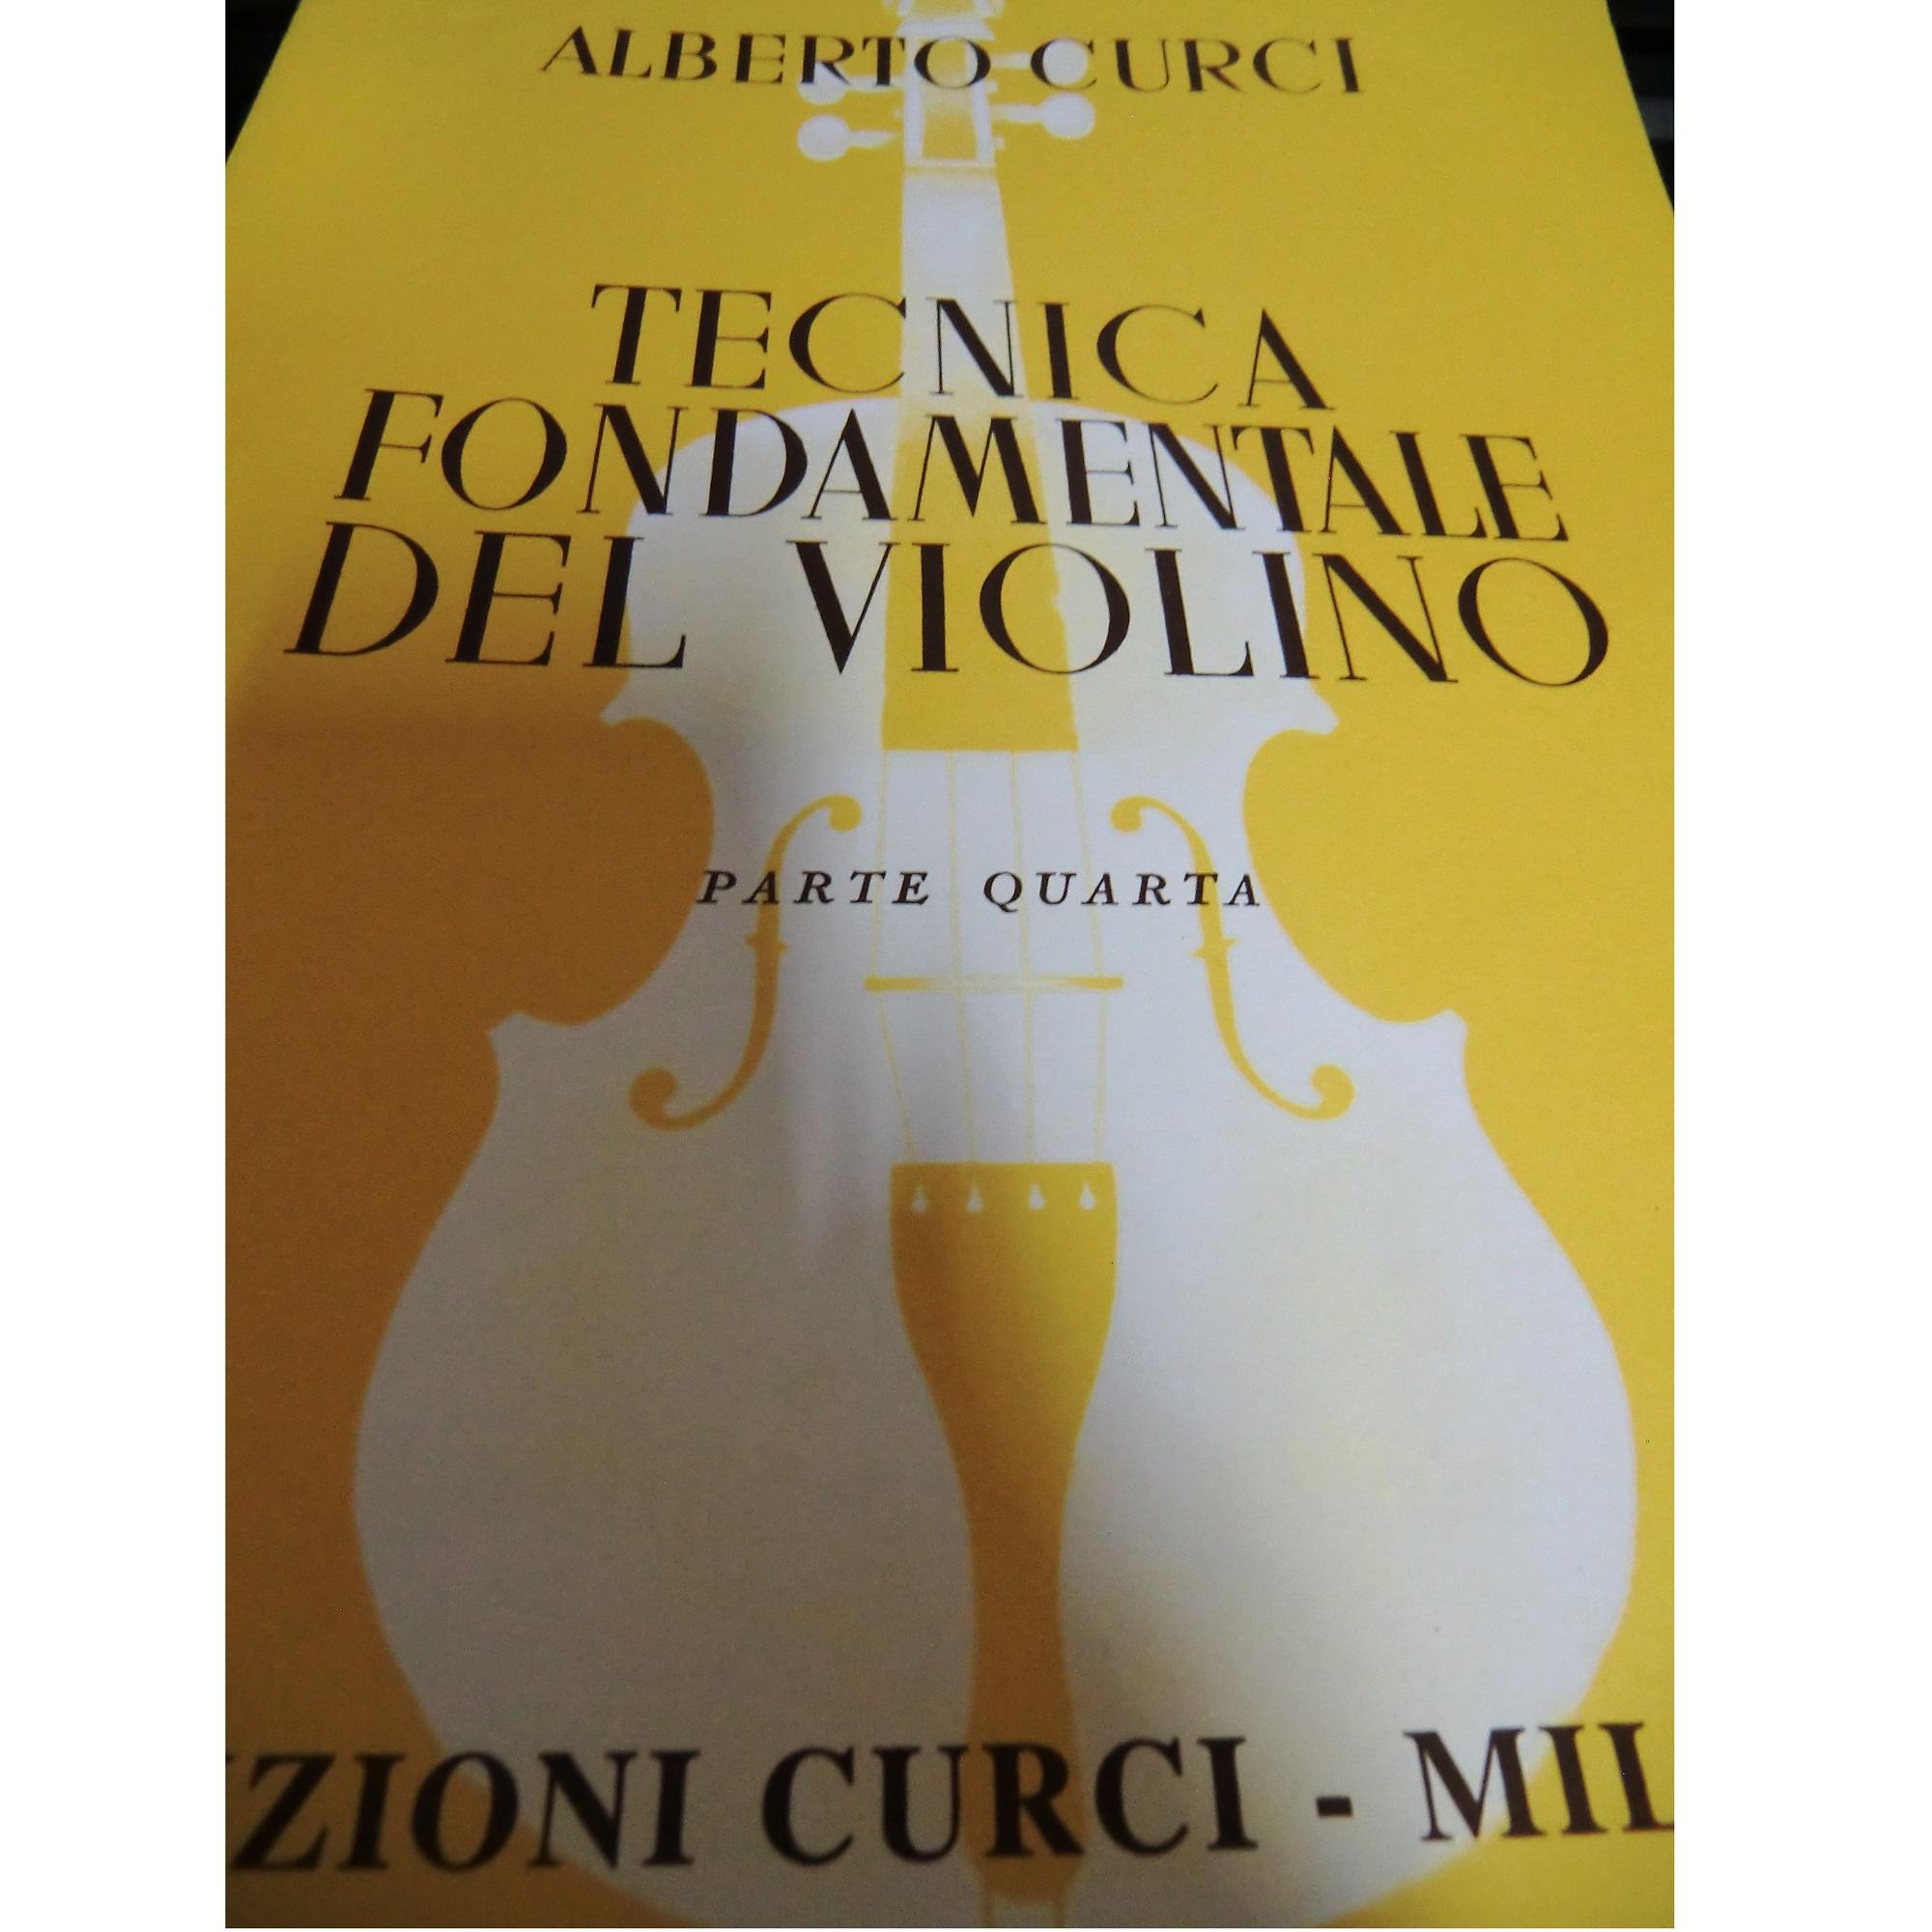 Curci Tecnica fondamentale del violino Parte Quarta - Edizioni Curci Milano